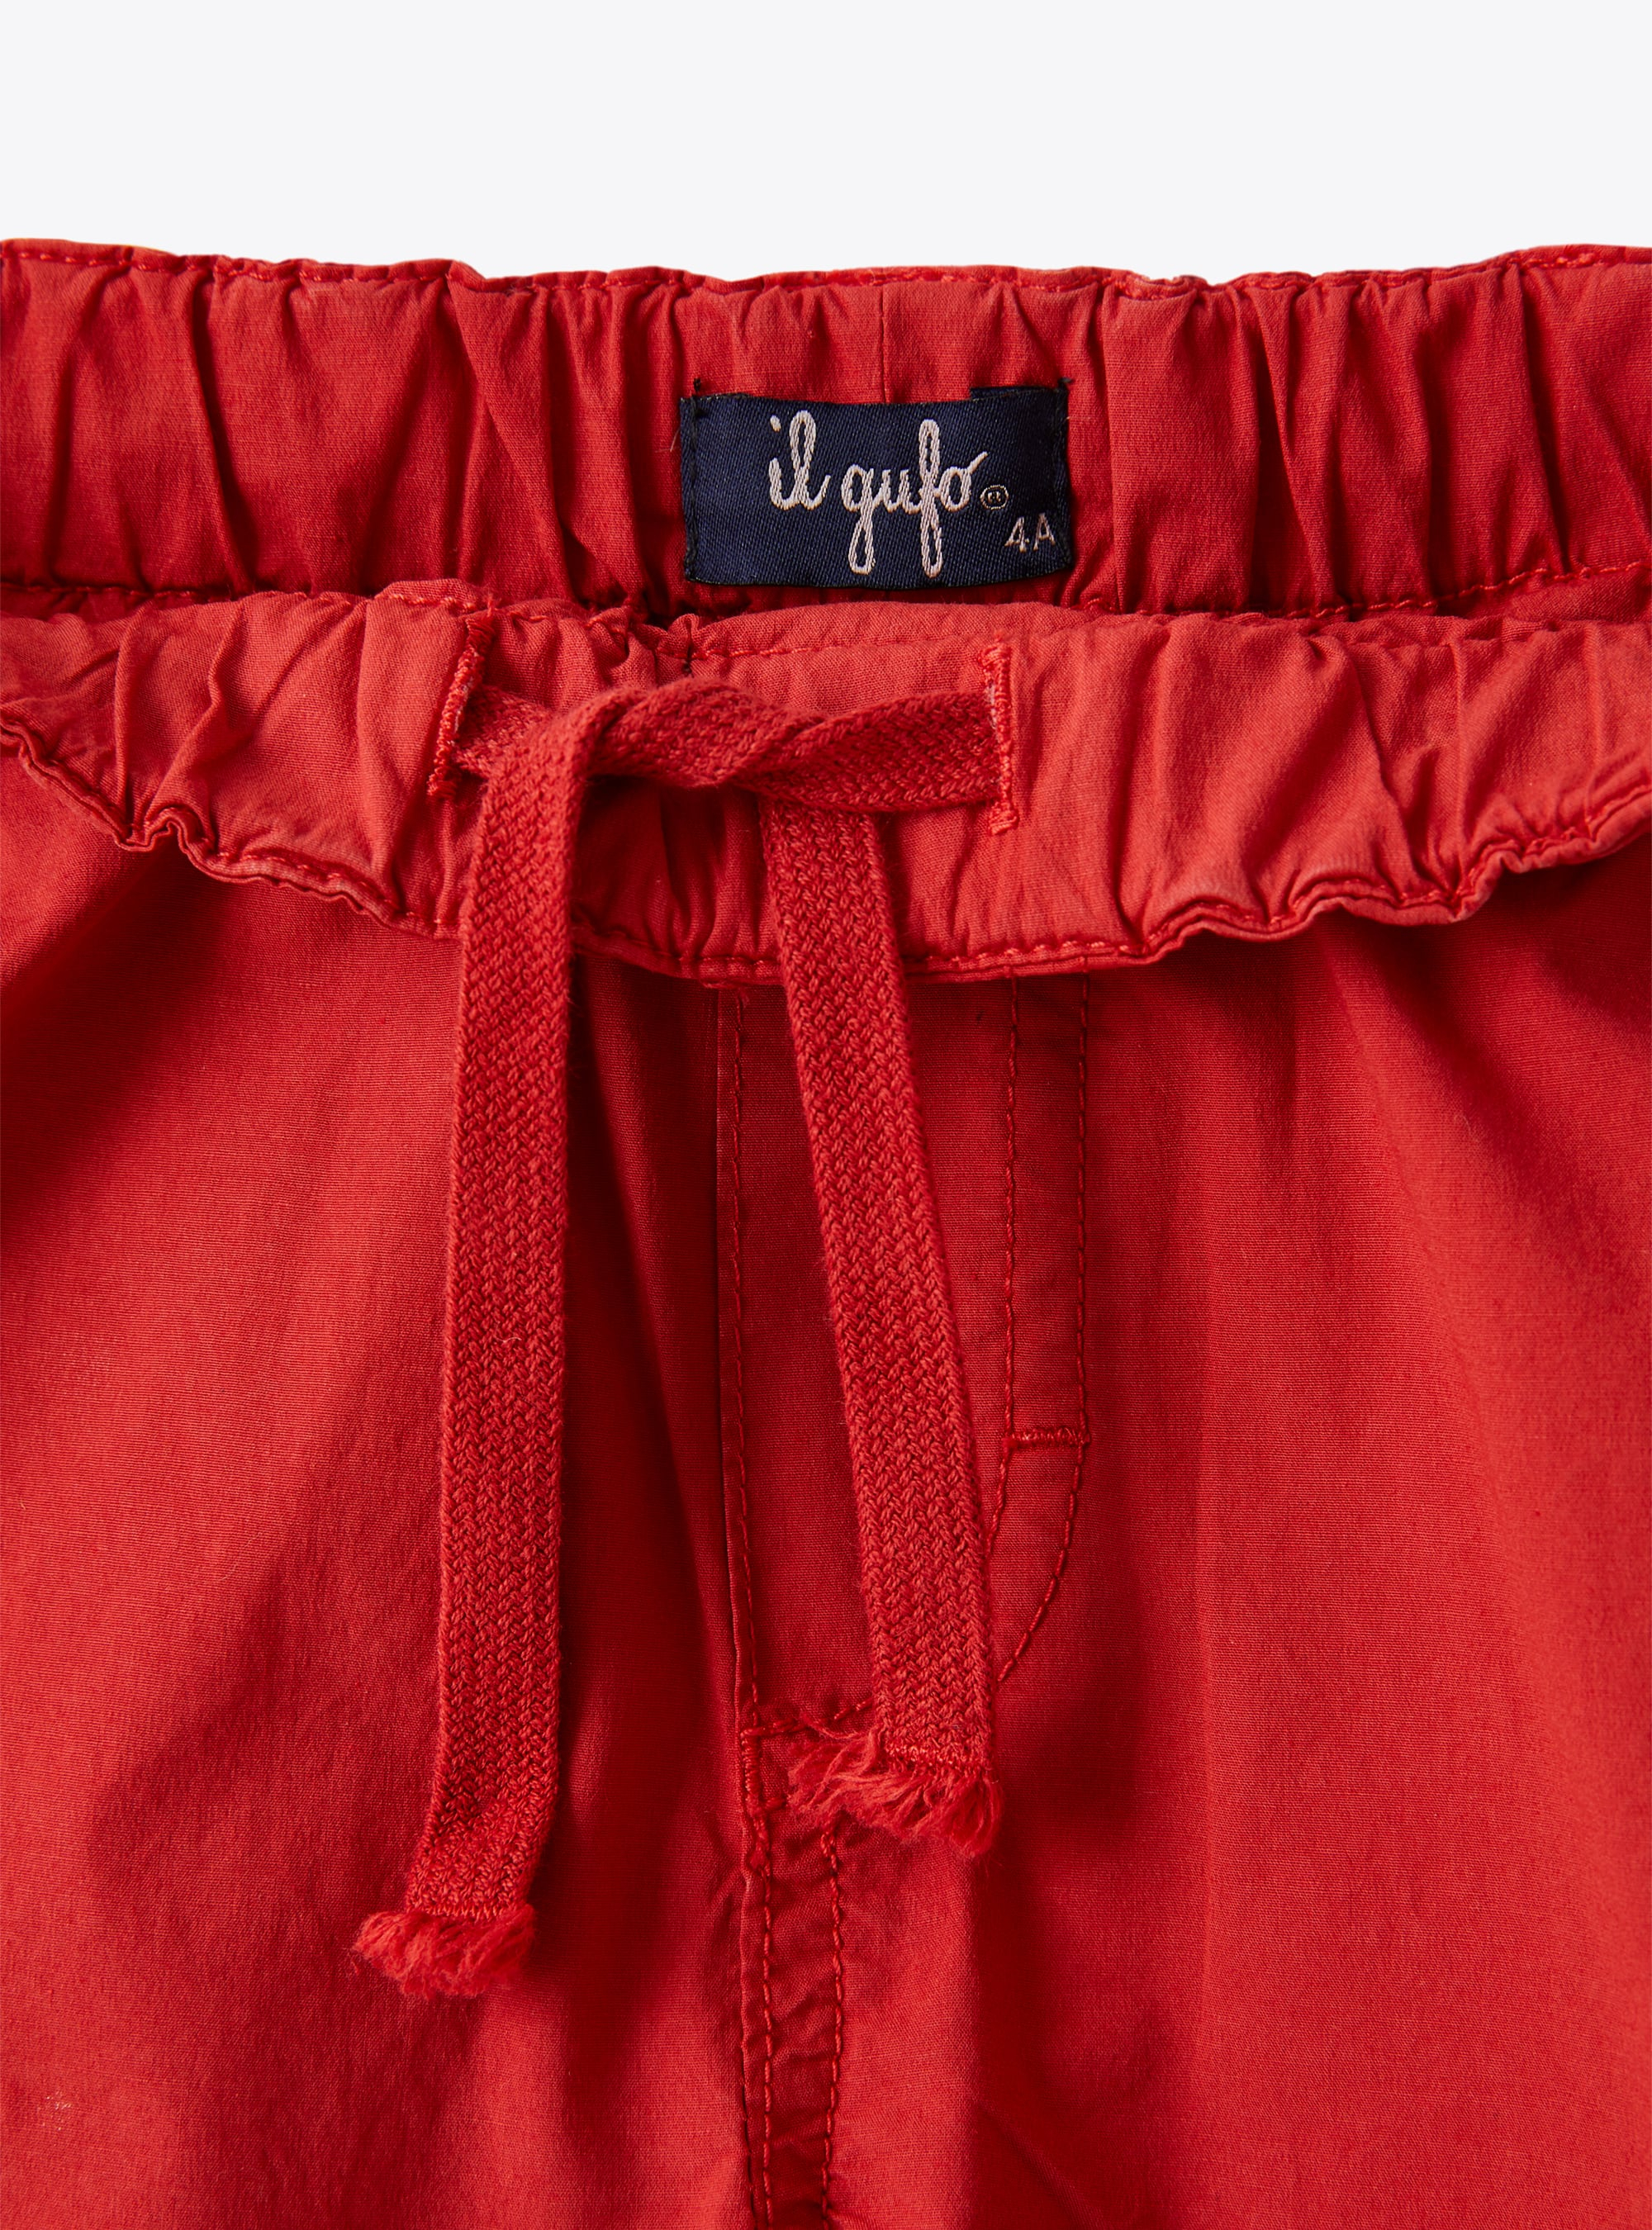 Bermuda shorts in red stretch poplin - Red | Il Gufo